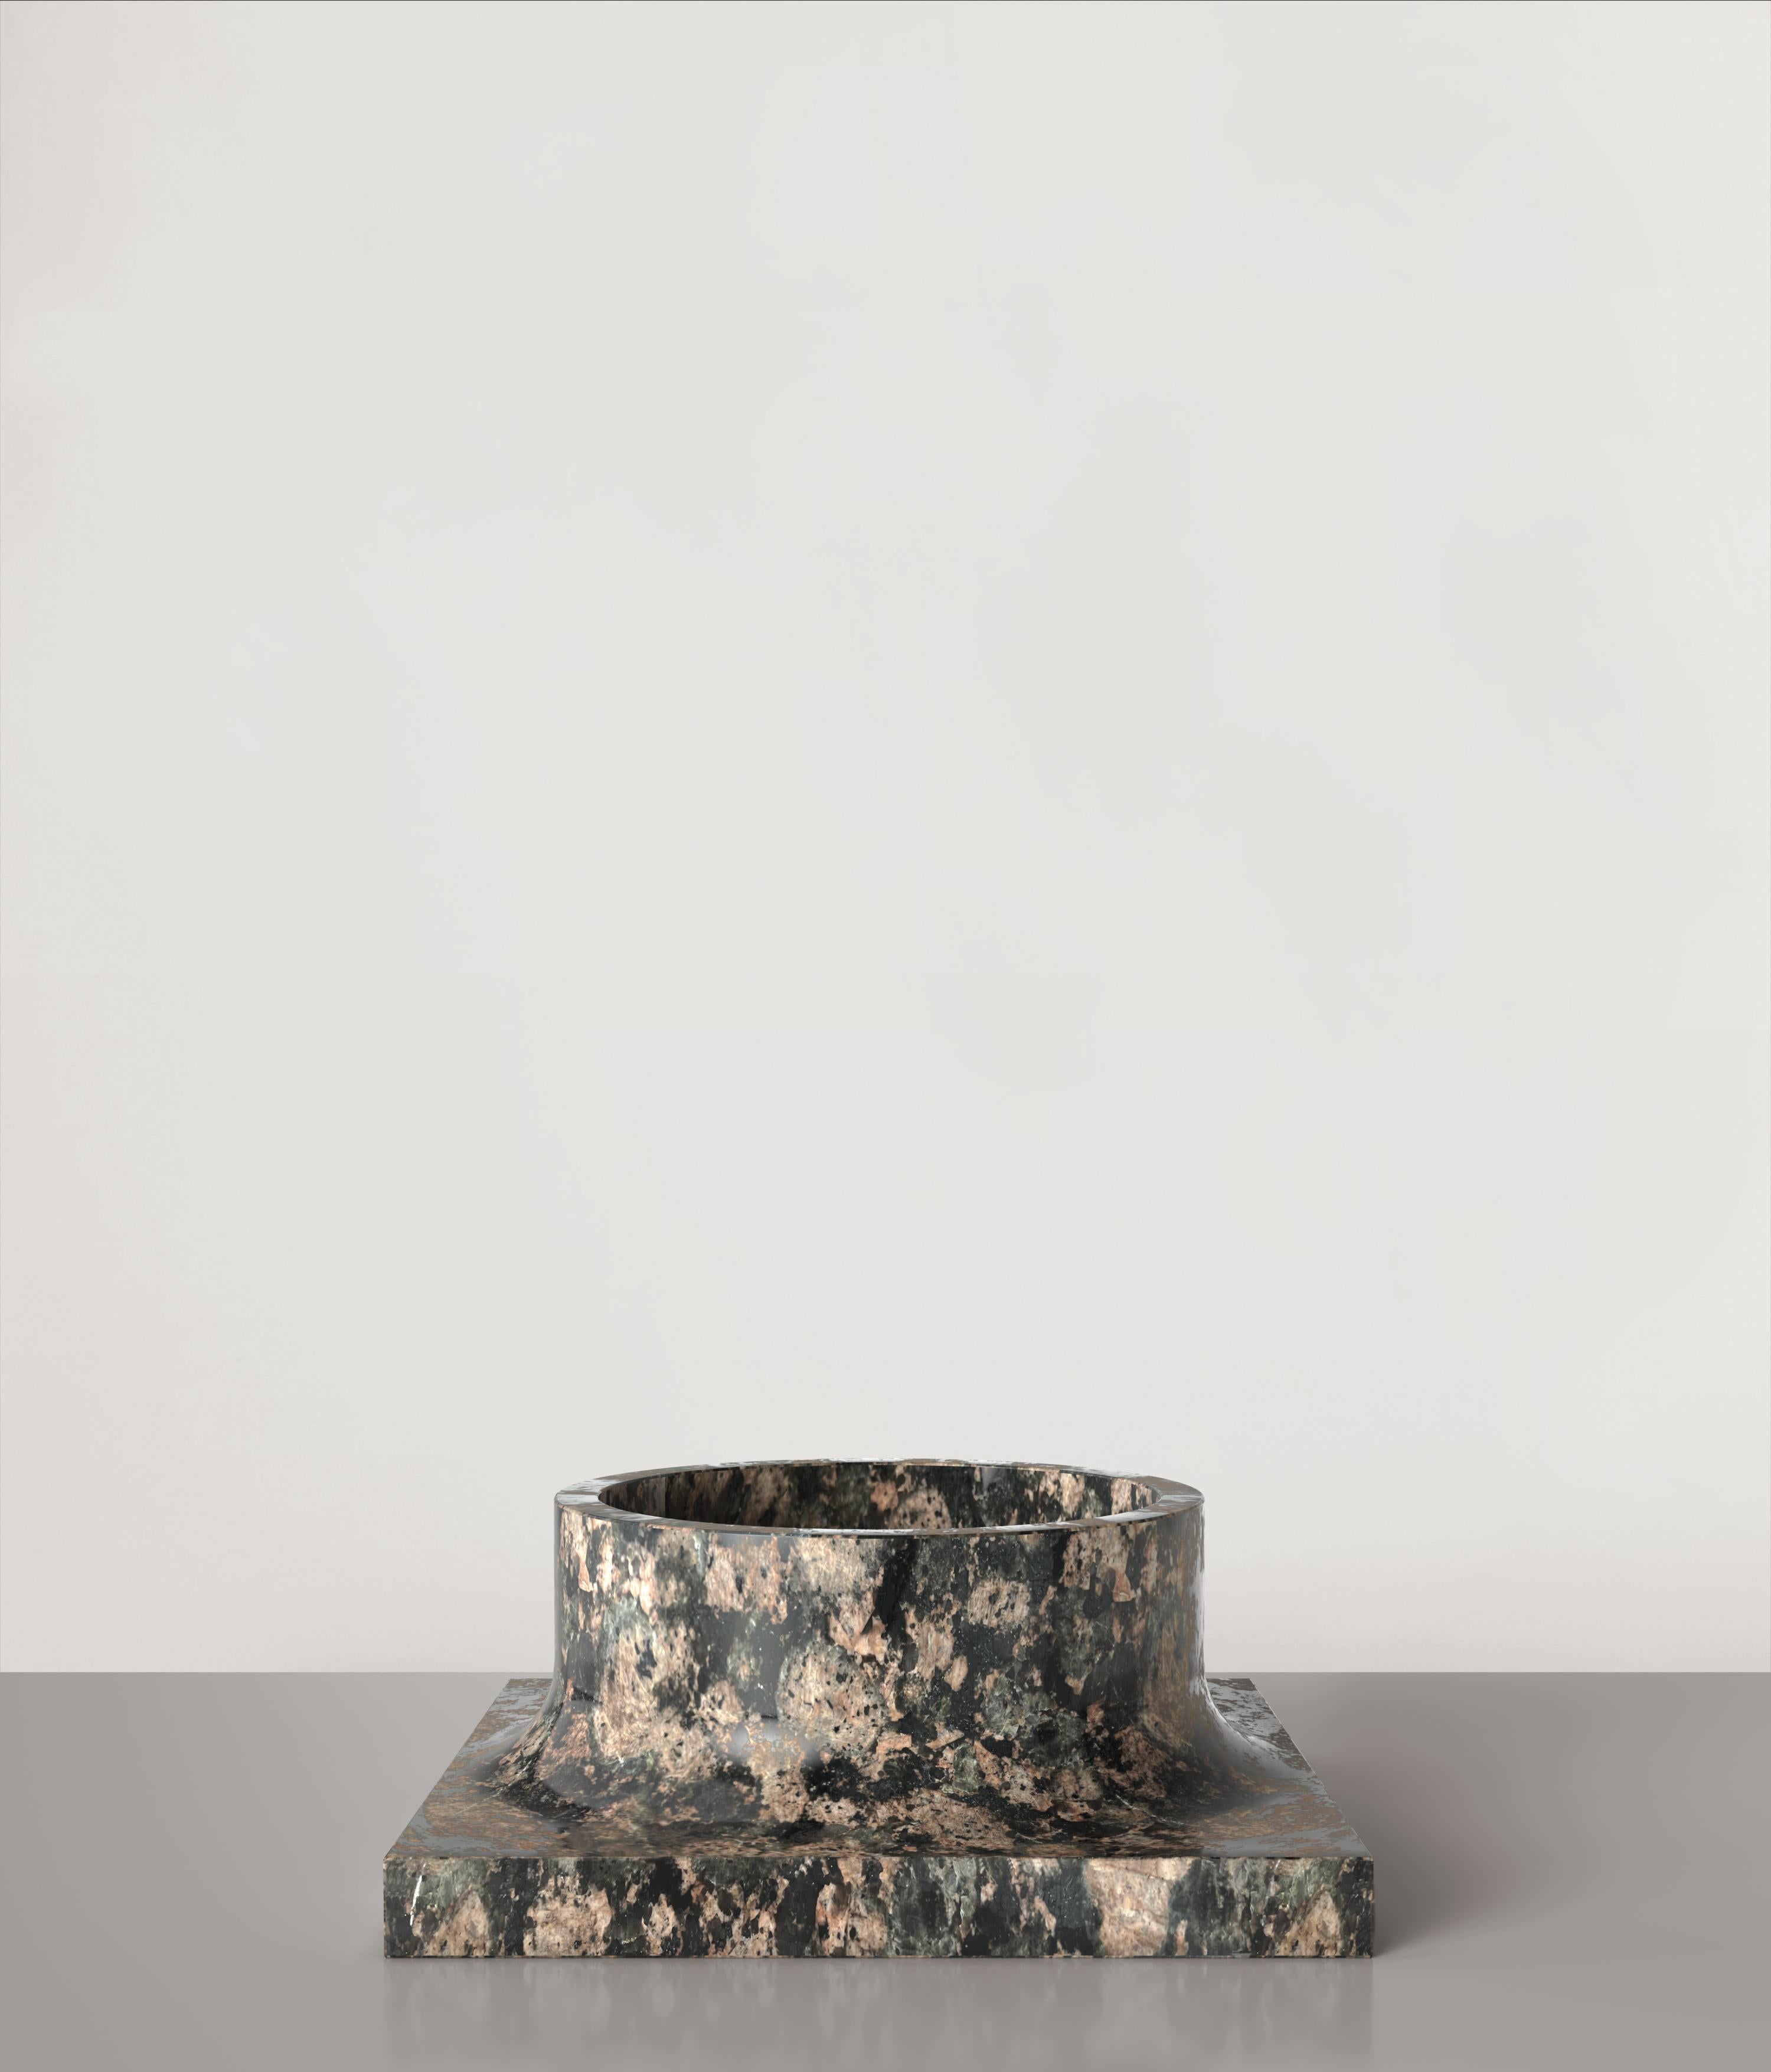 Italian Contemporary Limited Edition Granite Stone Vase, Palazzo V1 by Edizione Limitata For Sale